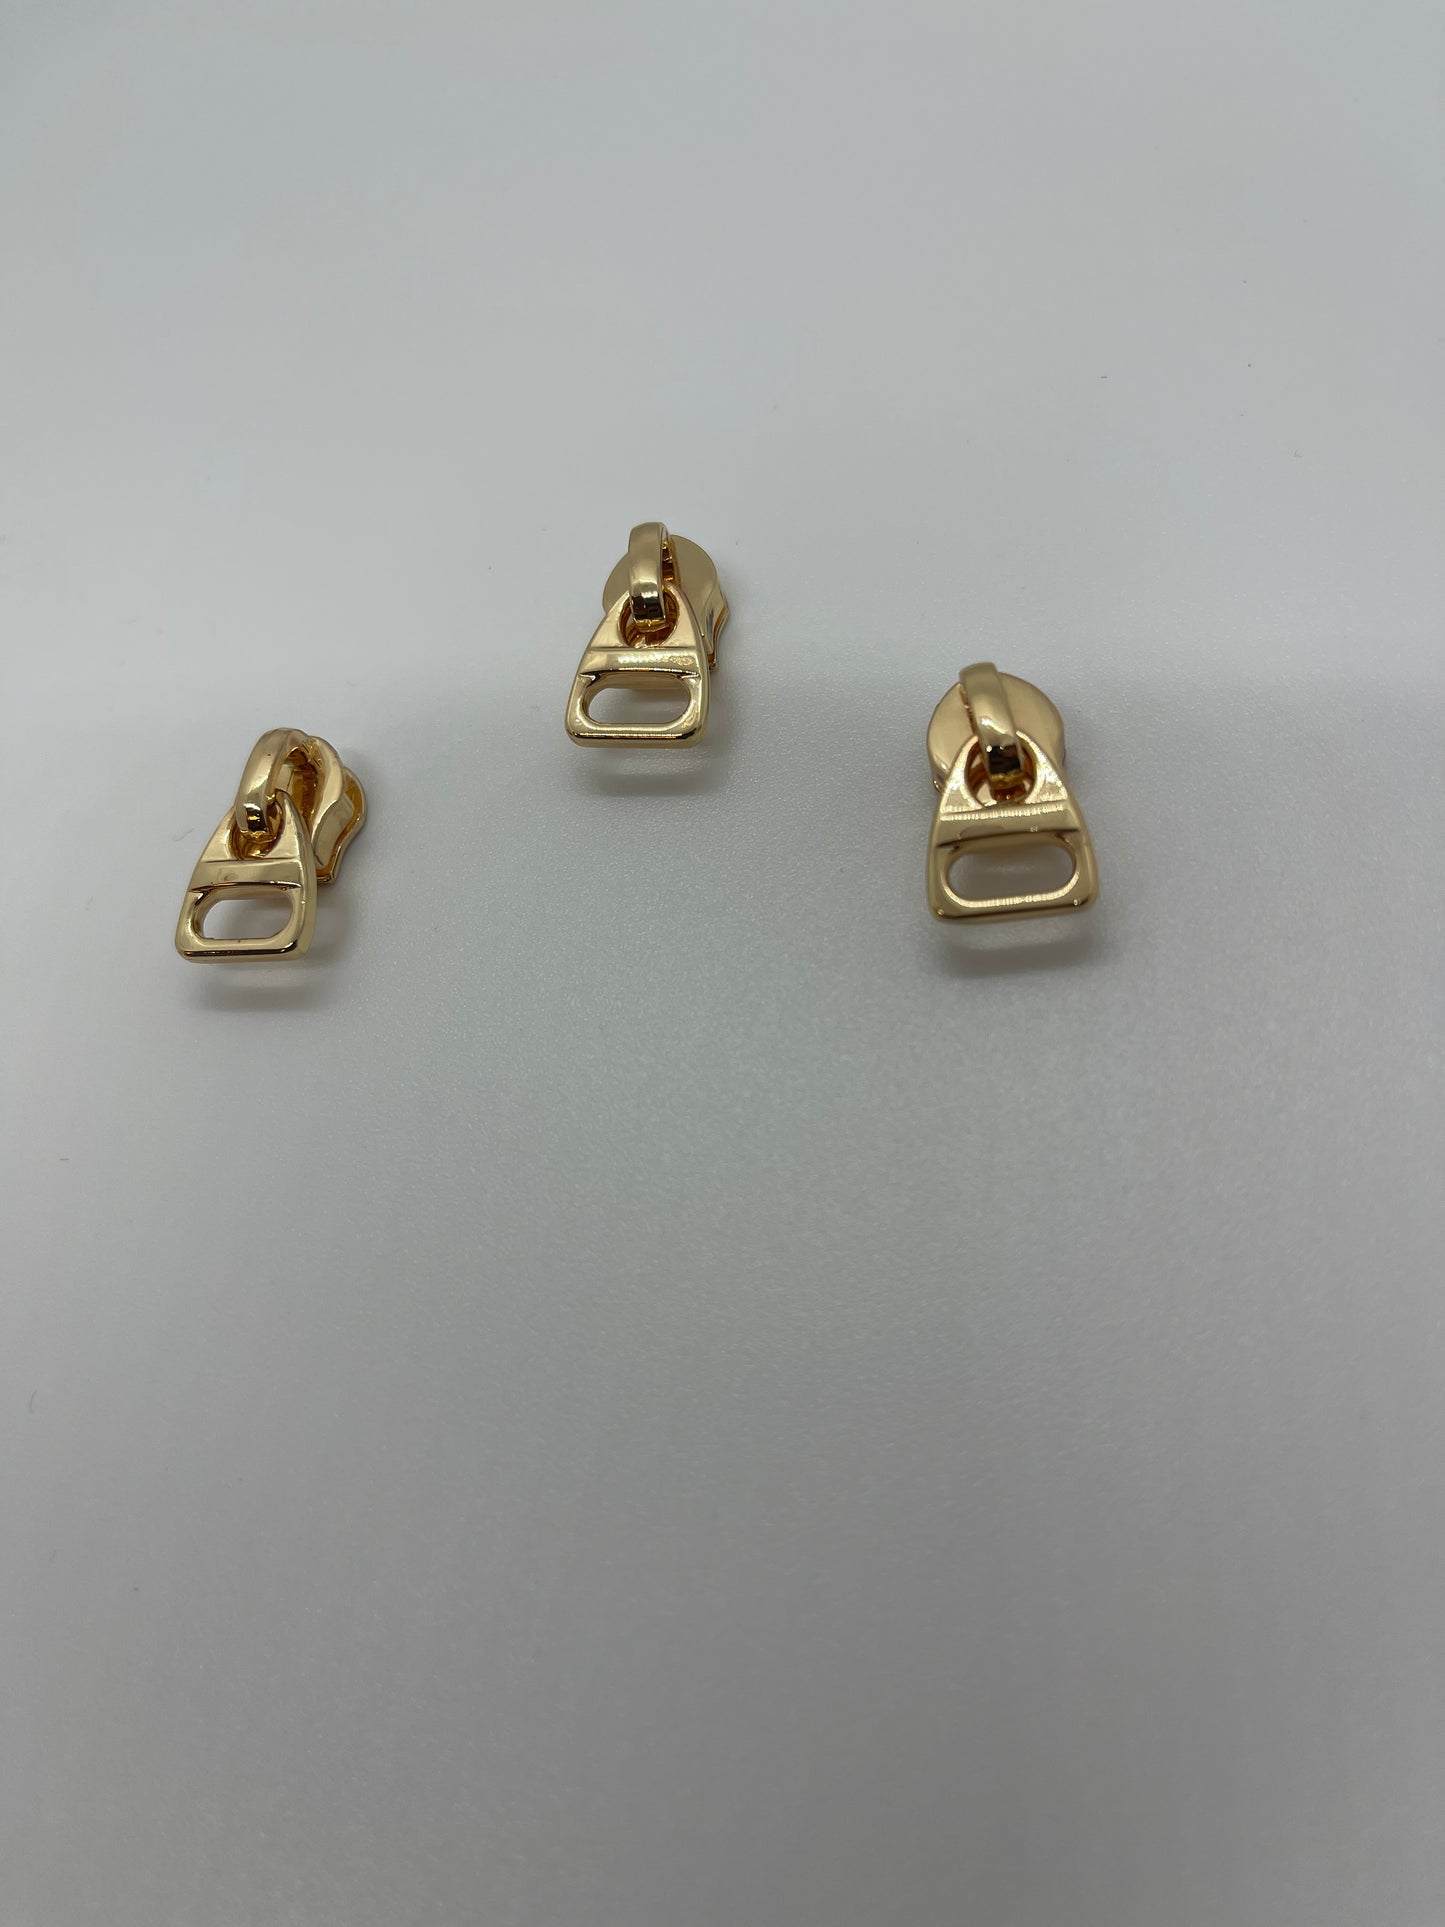 Squared Gold Zipper Pull #5 - 1/2 Inch